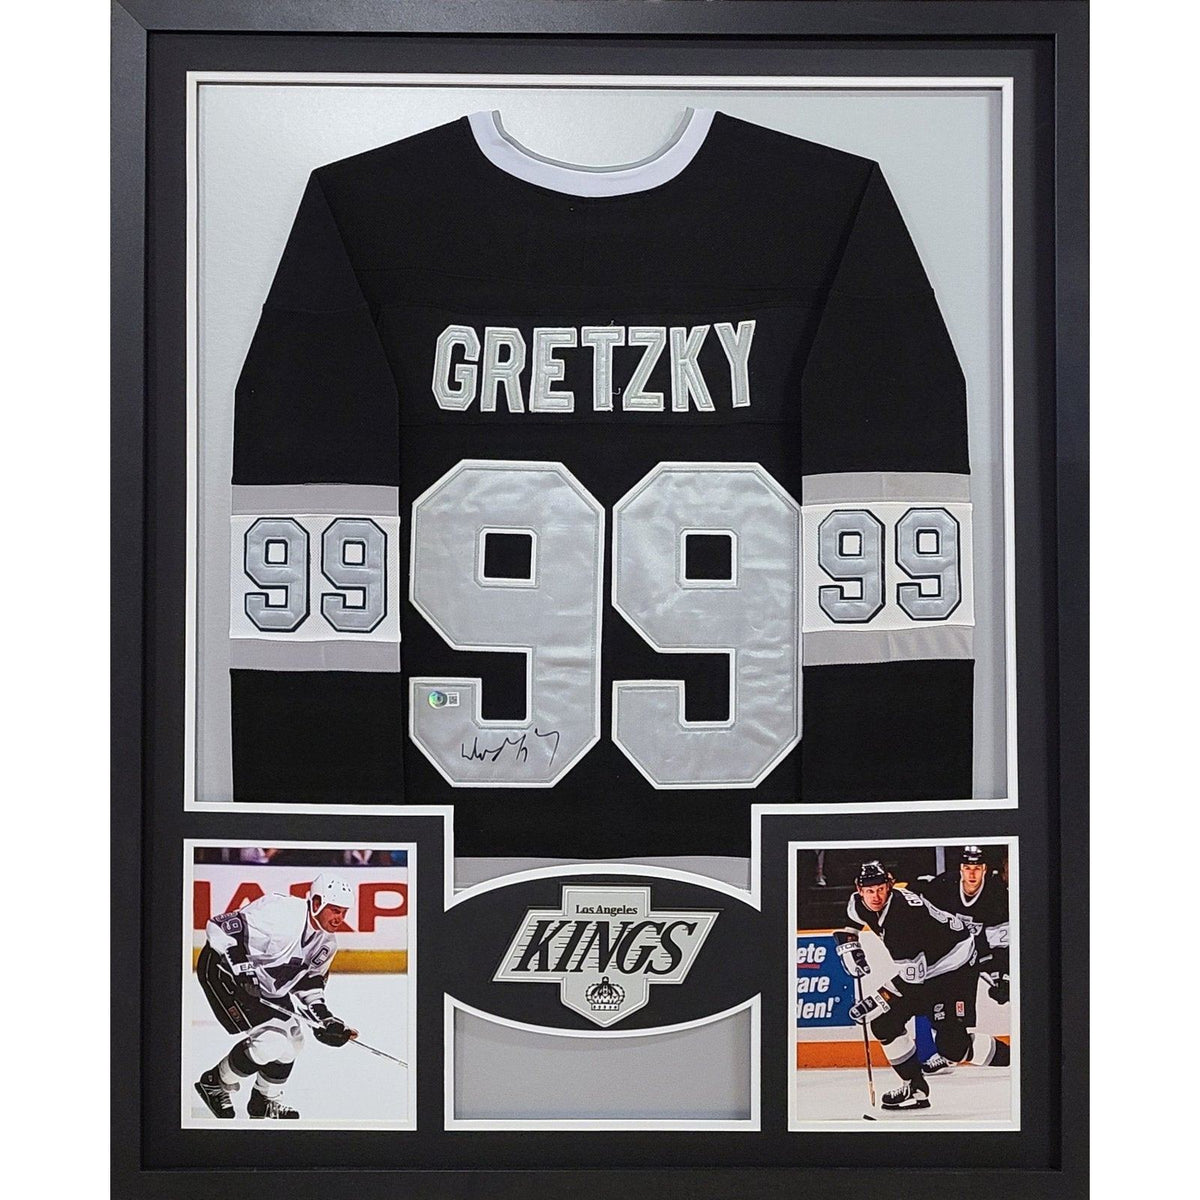 Wayne Gretzky Framed Signed Los Angeles Kings Jersey PSA/DNA Autographed